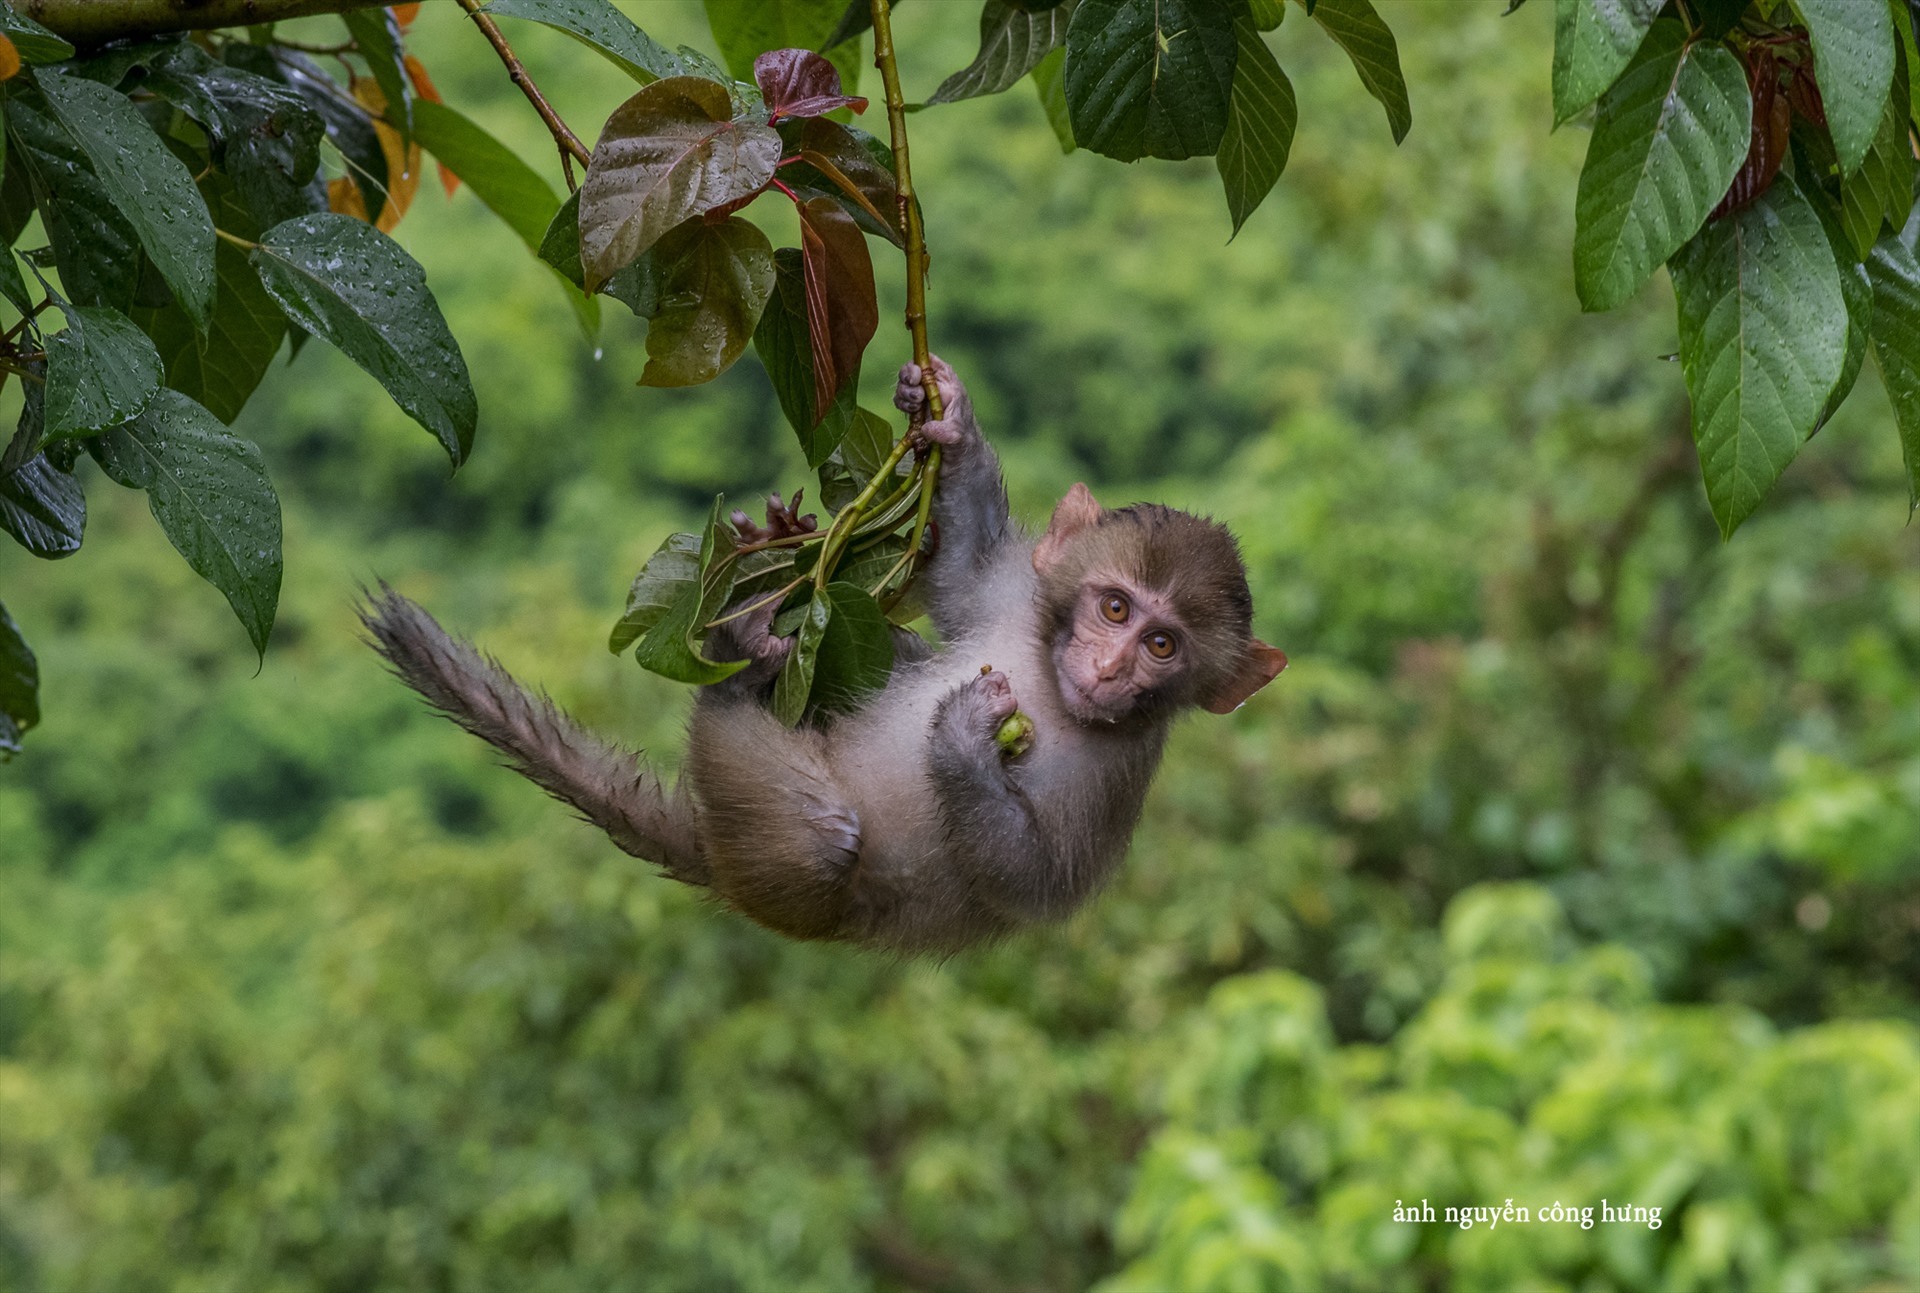 Đảo Khỉ là một trong những điểm đến không thể bỏ lỡ tại Việt Nam, với nhiều trò chơi, khám phá và trải nghiệm thú vị. Tại đây, bạn có cơ hội hòa mình vào thiên nhiên hoang sơ với những con khỉ đáng yêu và thân thiện. Dành ít thời gian để khám phá Đảo Khỉ và bạn sẽ có những kỷ niệm đáng nhớ suốt đời.